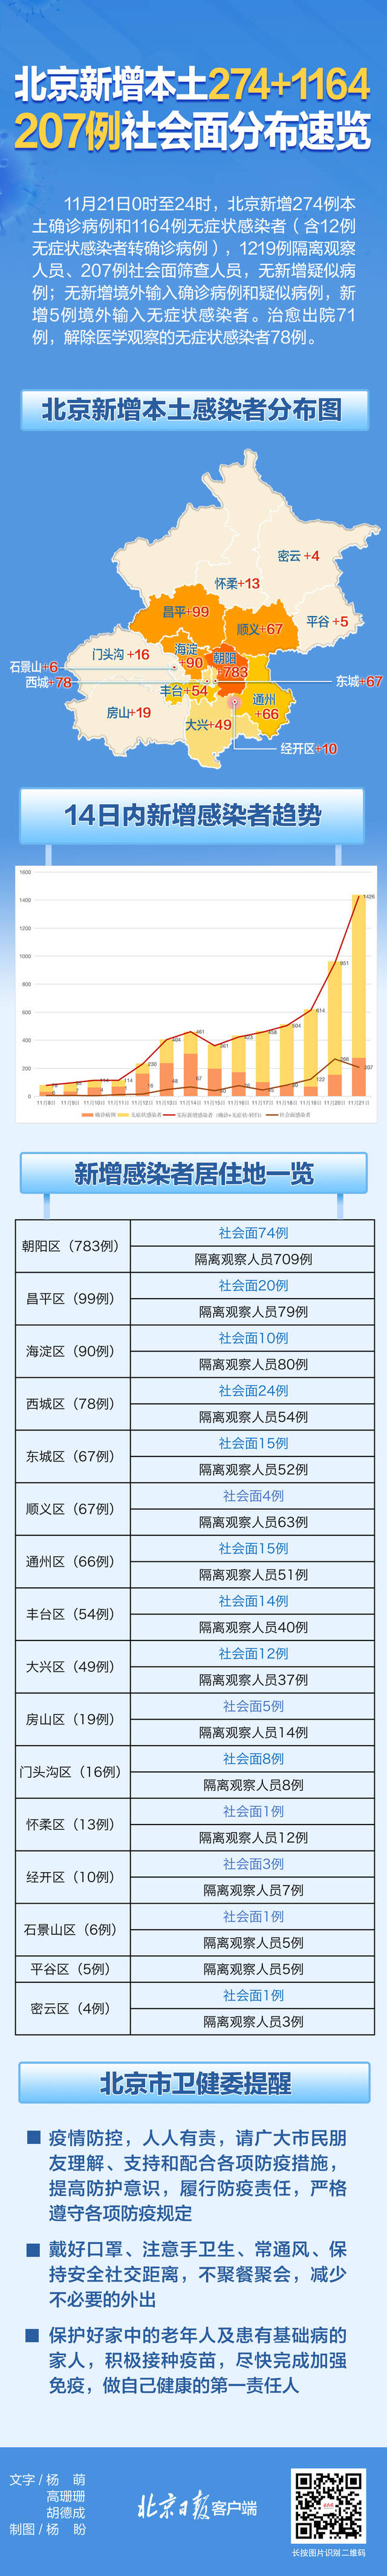 北京昨日新增本土274+1164，社会面感染者分布一图速览